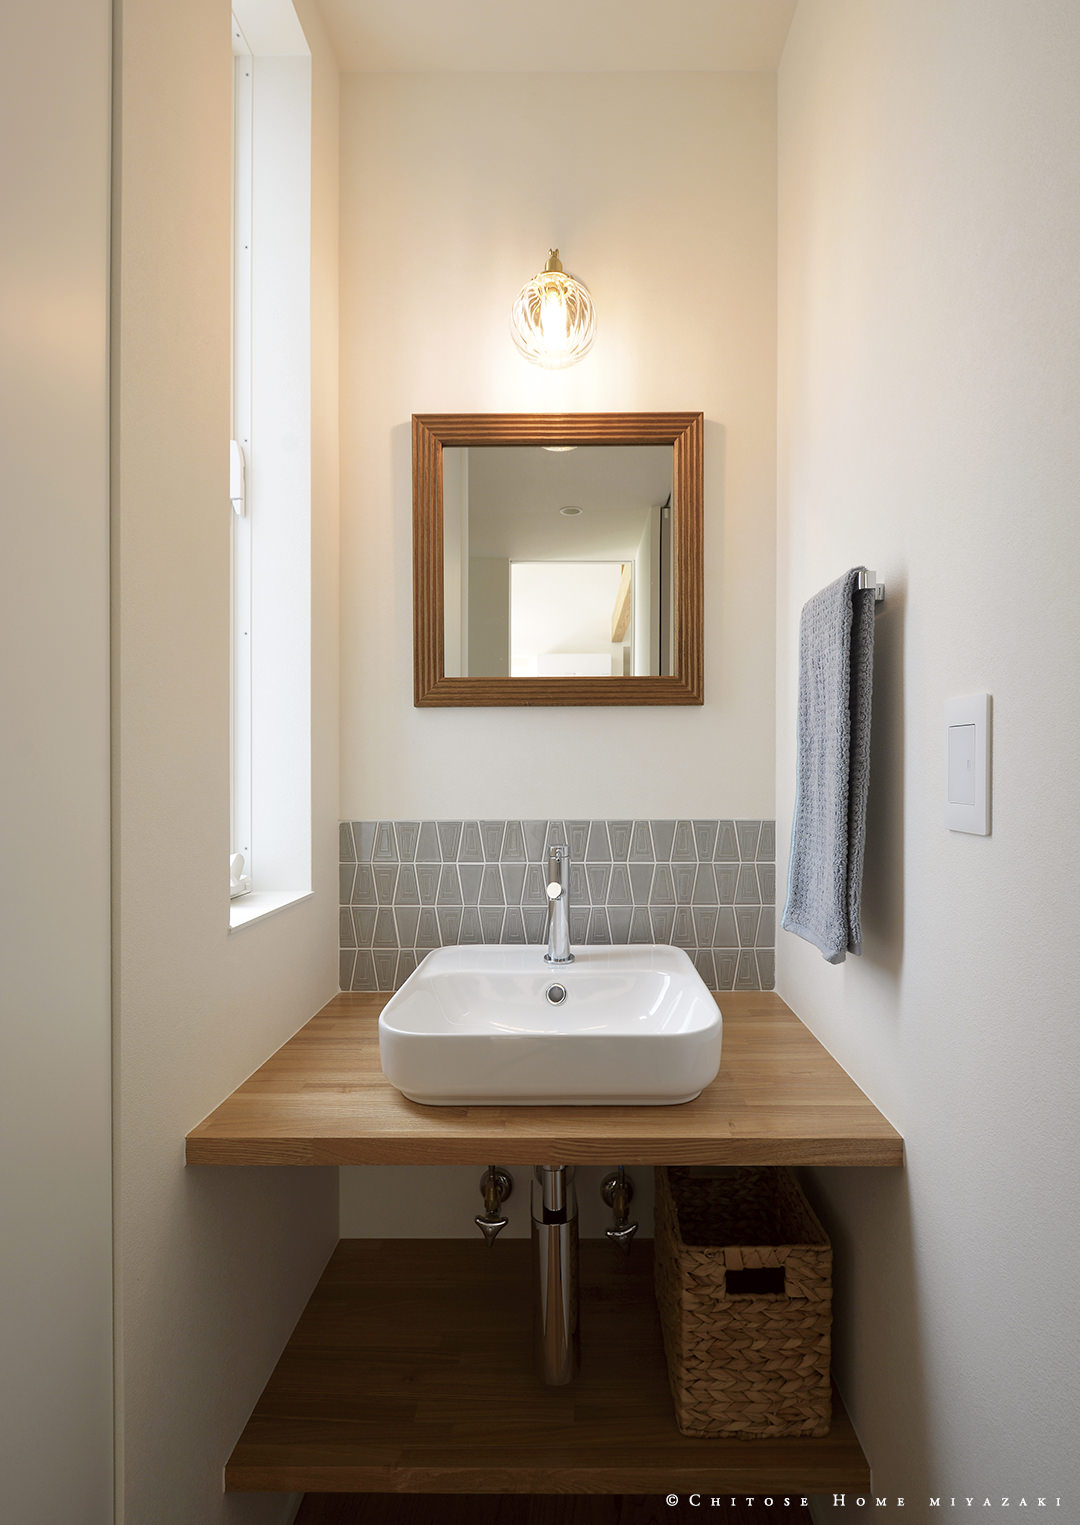 タイルや木製枠の鏡を使った、こなれた雰囲気の手洗いスペース。メインの洗面スペースとは別に、家族のちょっとした手洗いに使いやすいコンパクトな造作を設える。